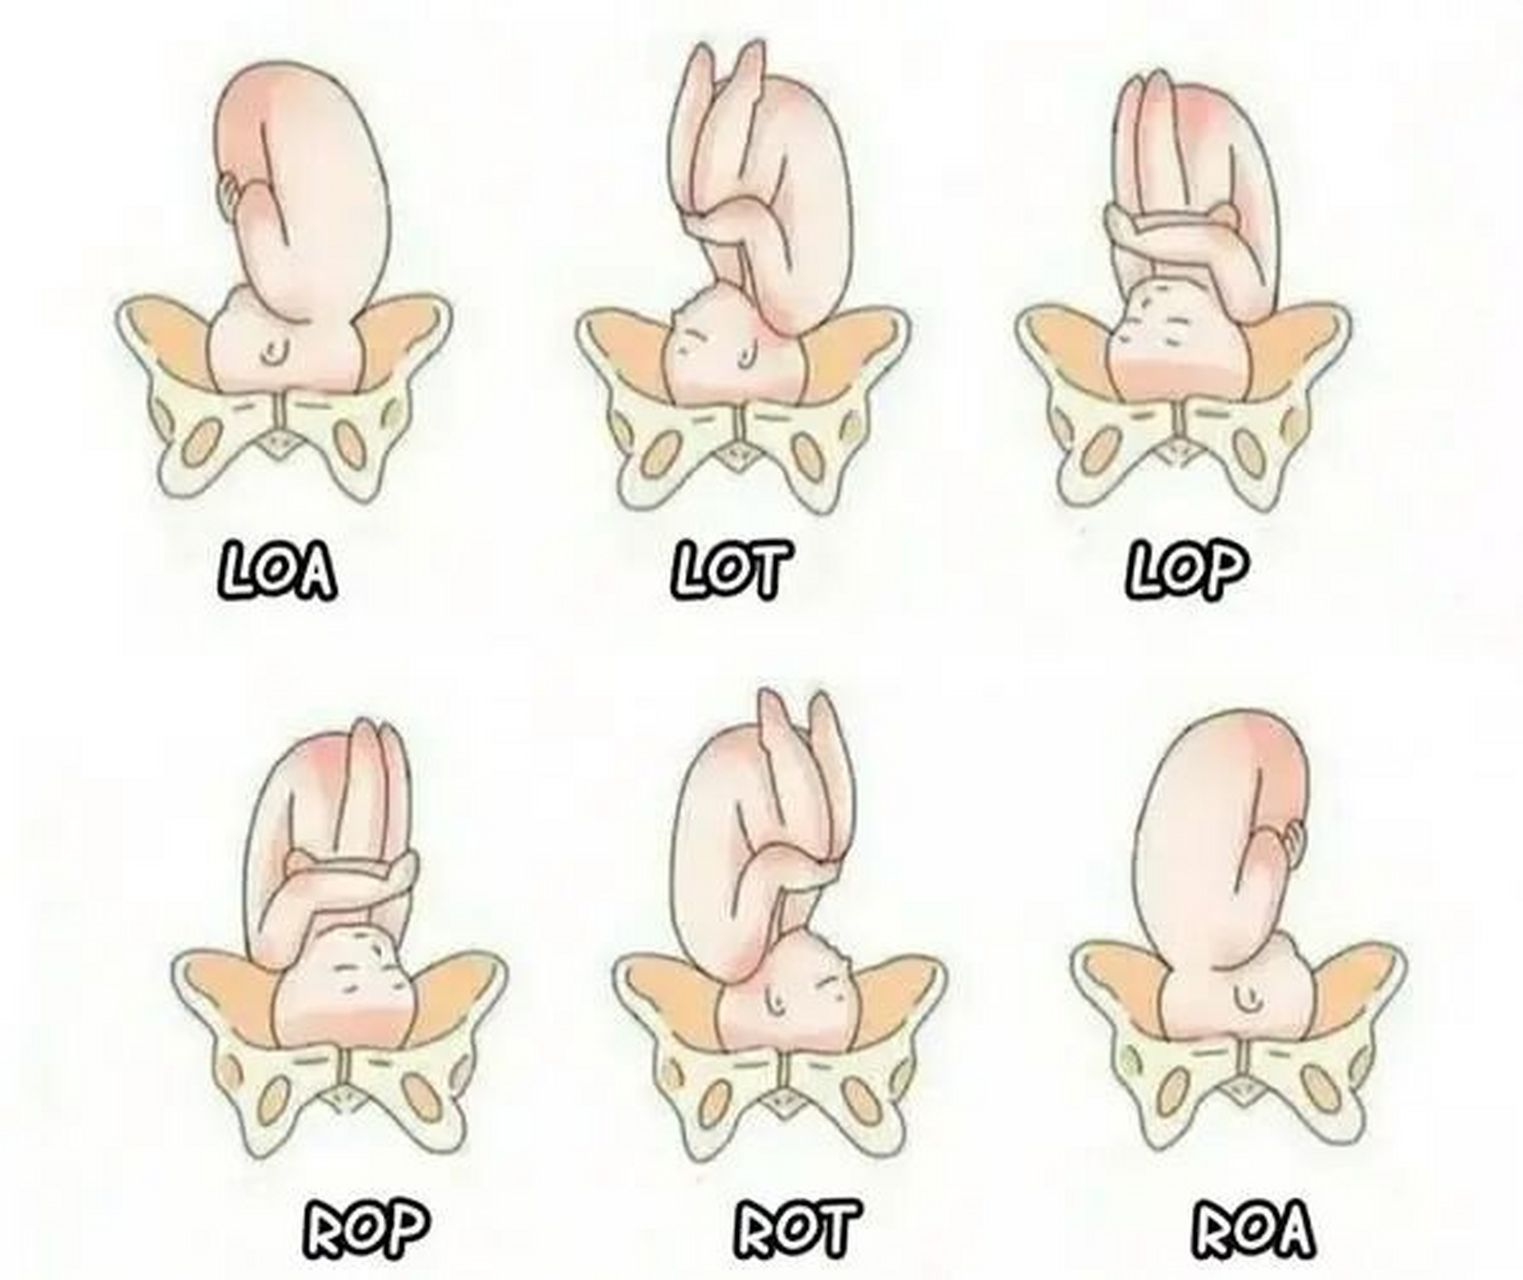 胎位与骨盆的图解图片